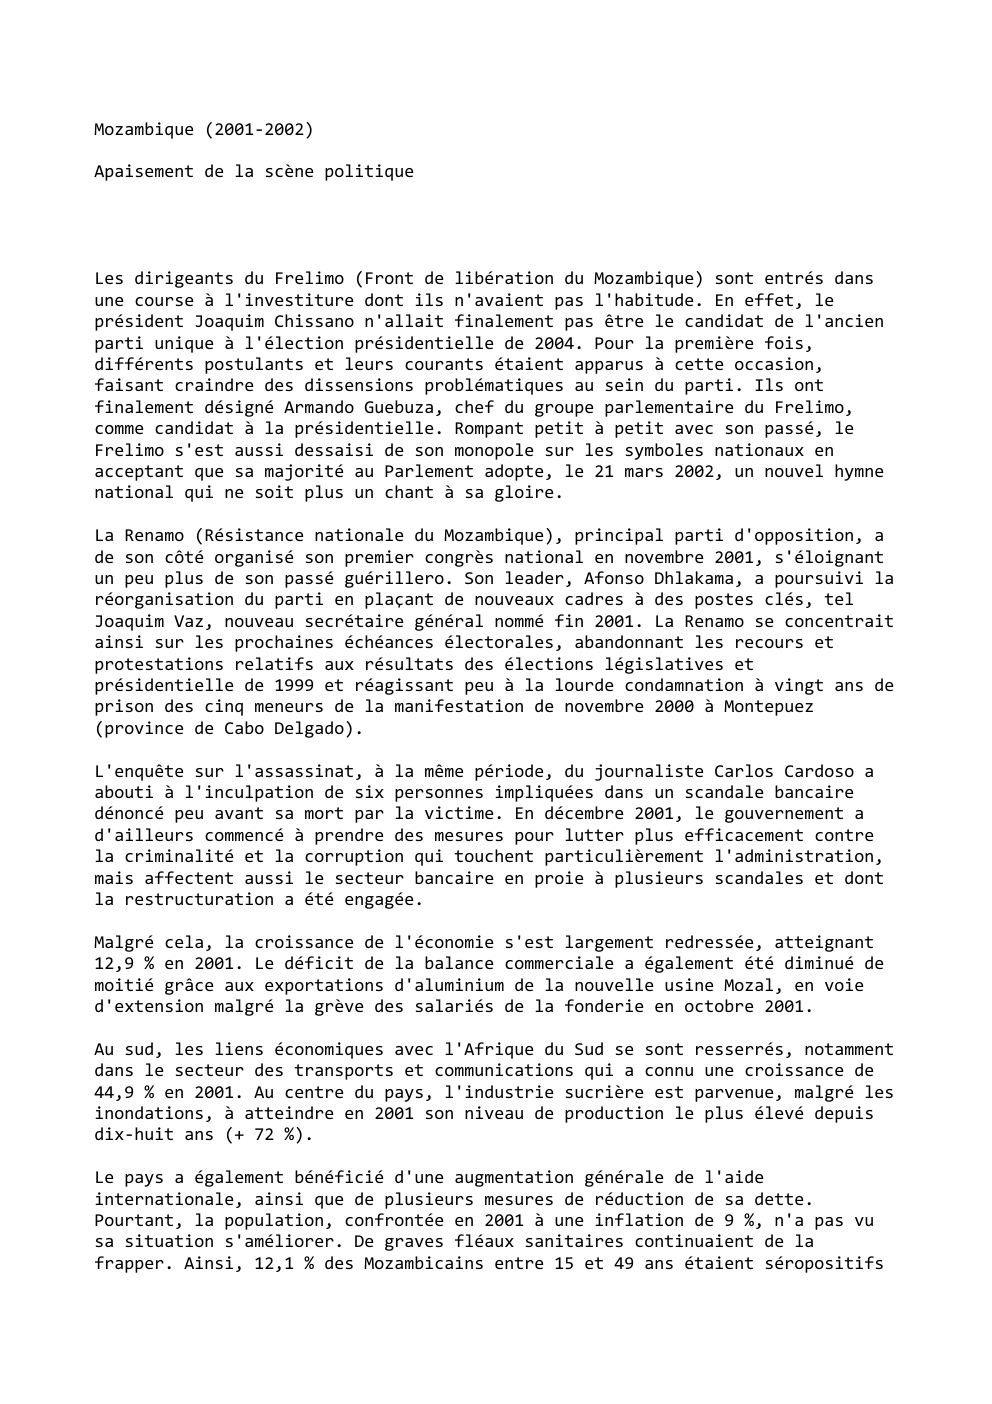 Prévisualisation du document Mozambique (2001-2002)
Apaisement de la scène politique

Les dirigeants du Frelimo (Front de libération du Mozambique) sont entrés dans
une...